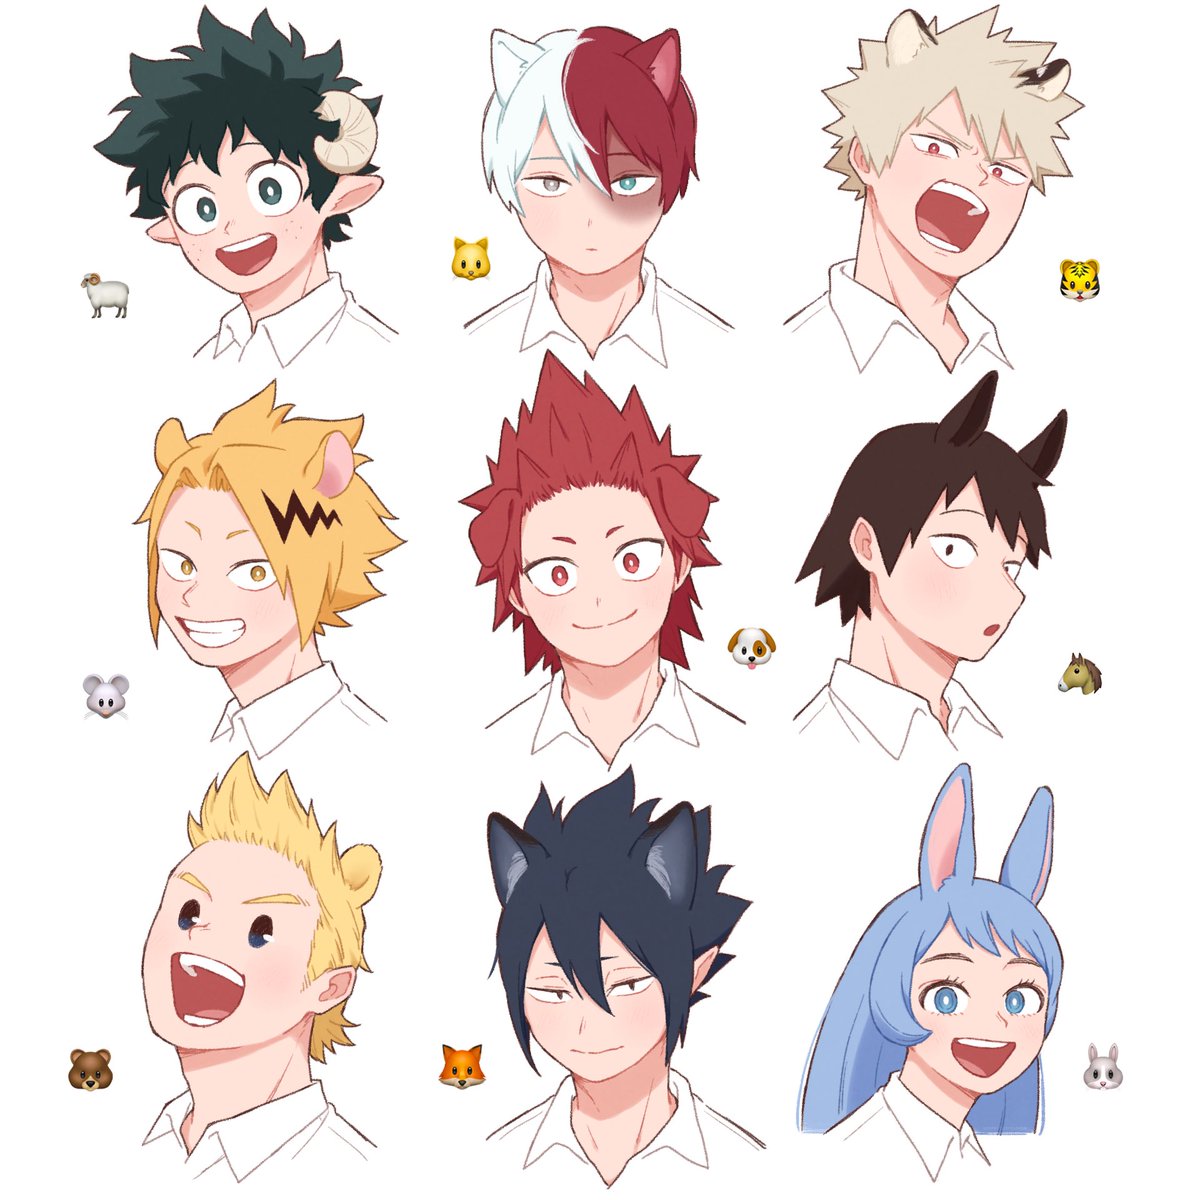 bakugou katsuki ,midoriya izuku ,todoroki shouto red hair animal ears horns blonde hair smile 6+boys open mouth  illustration images